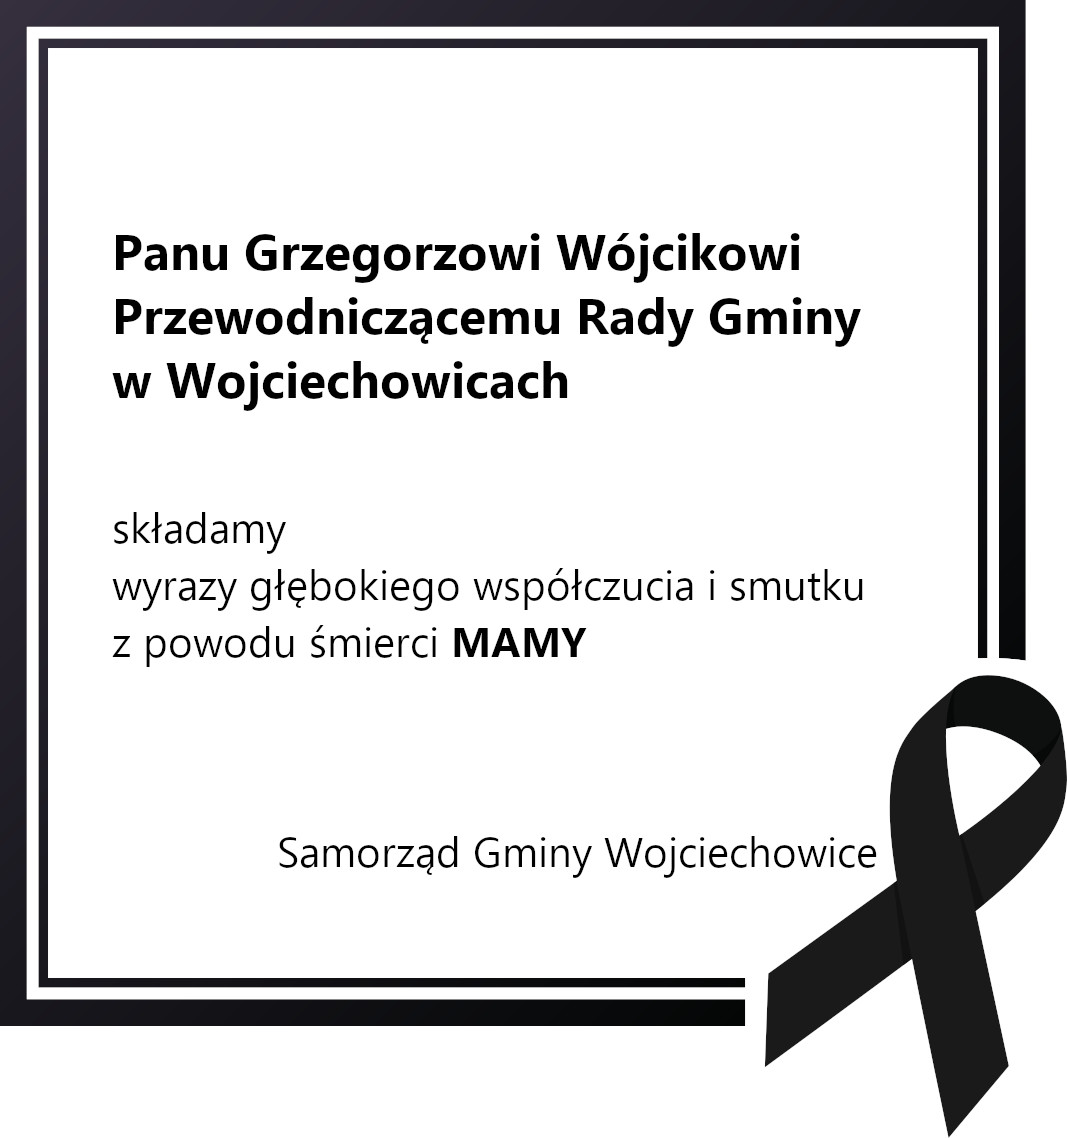 Grafika z kondolencjami dla Przewodniczącego Rady Gminy w Wojciechowicach